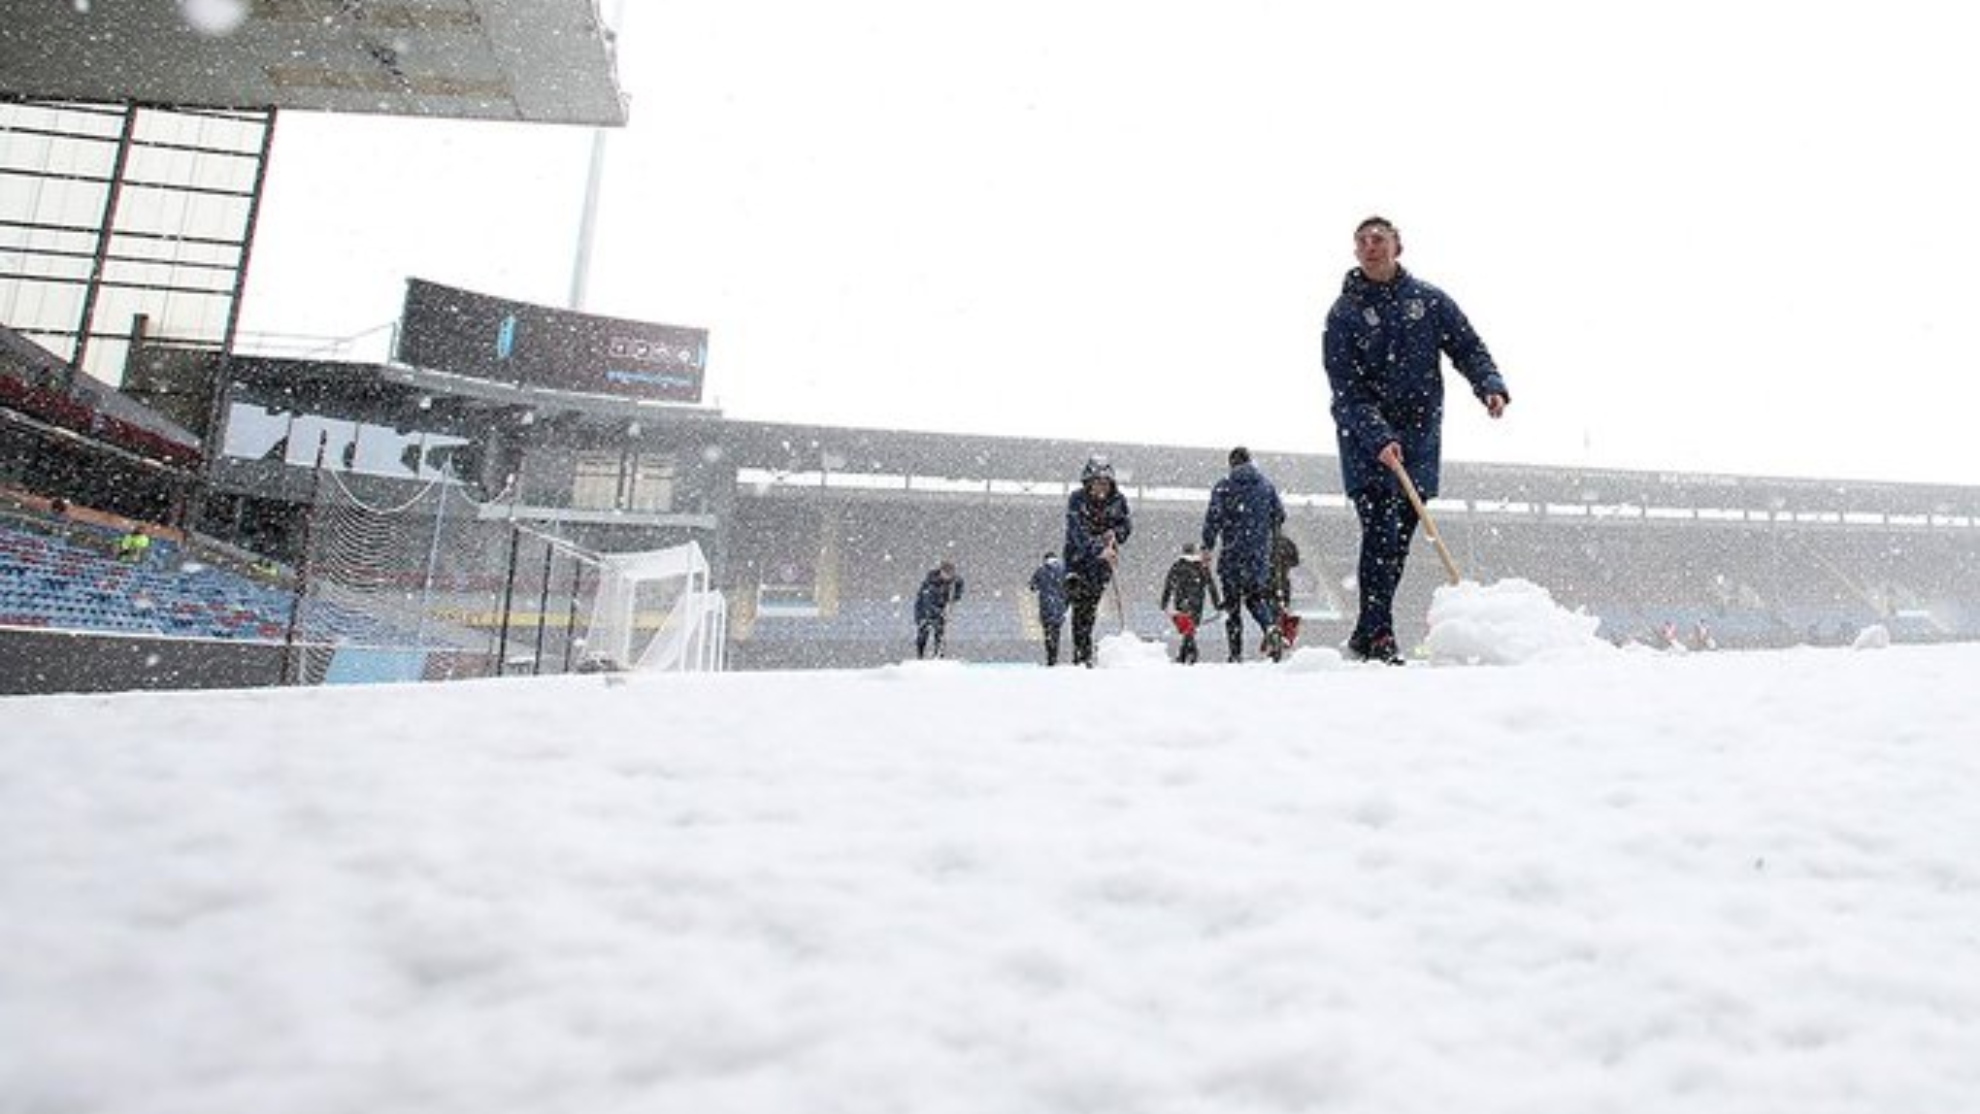 Operarios del Burnley quitando la nieve del estadio Tur Moor.